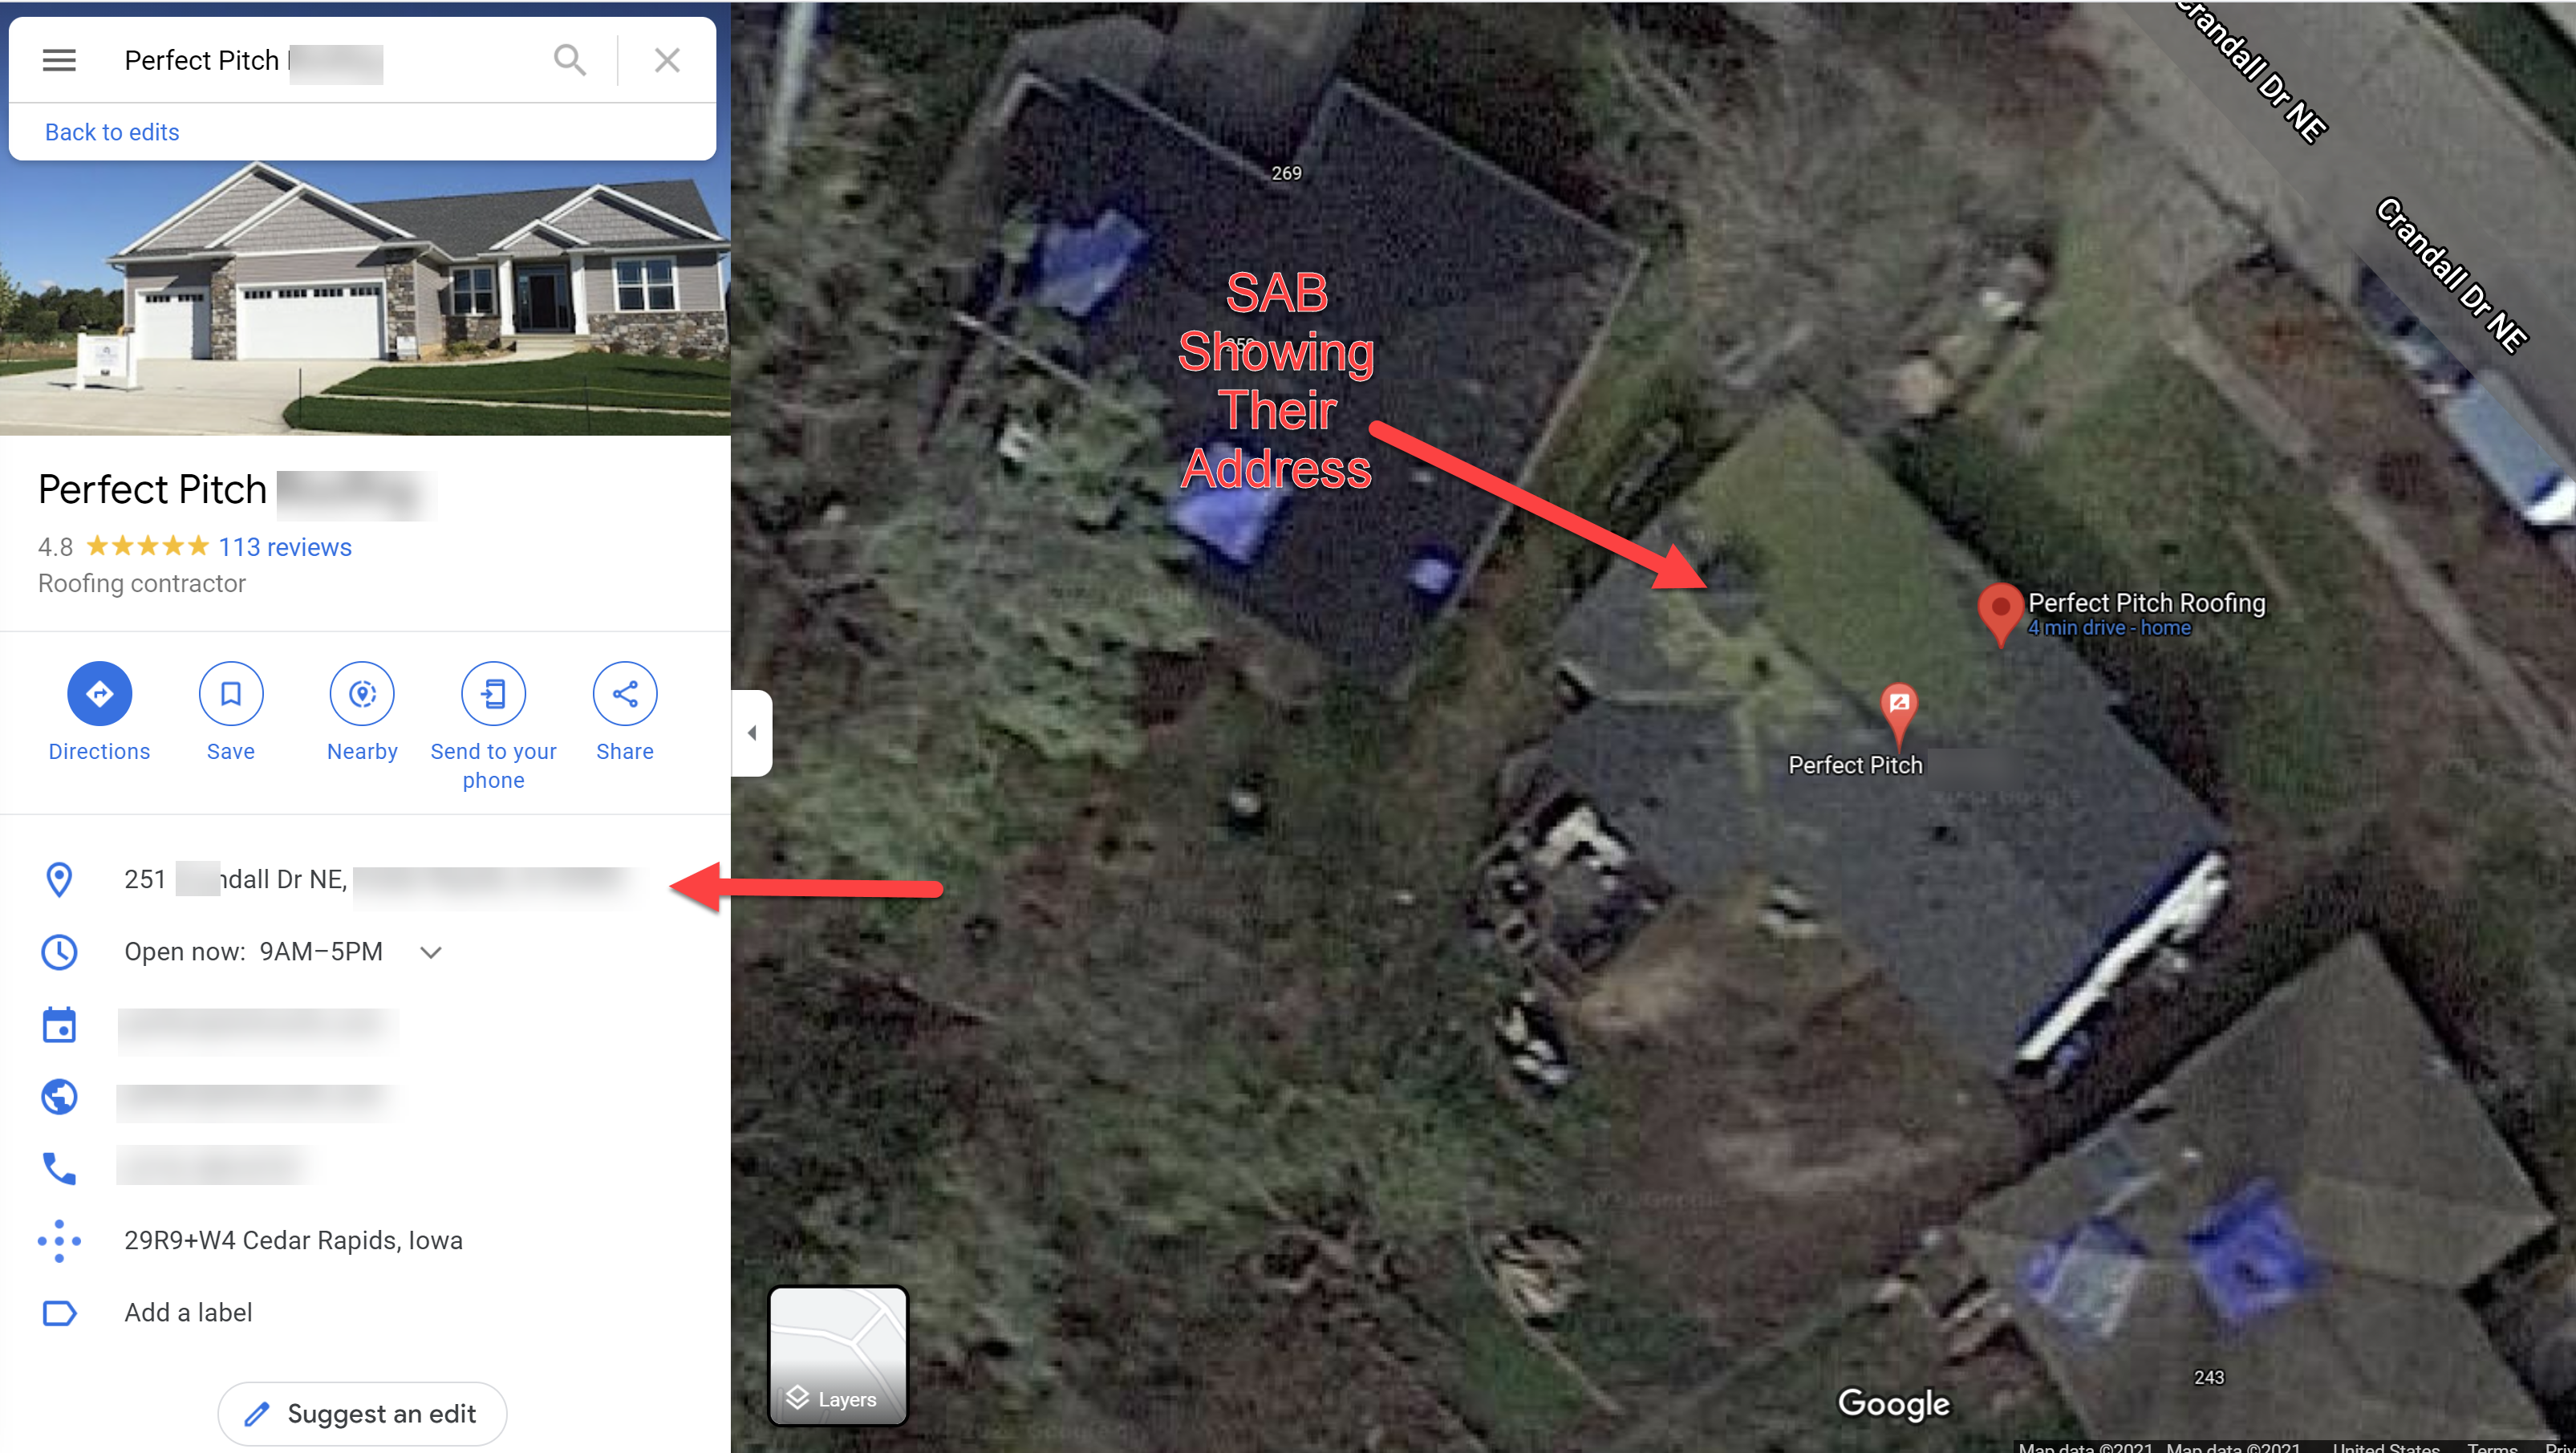 SAB showing address